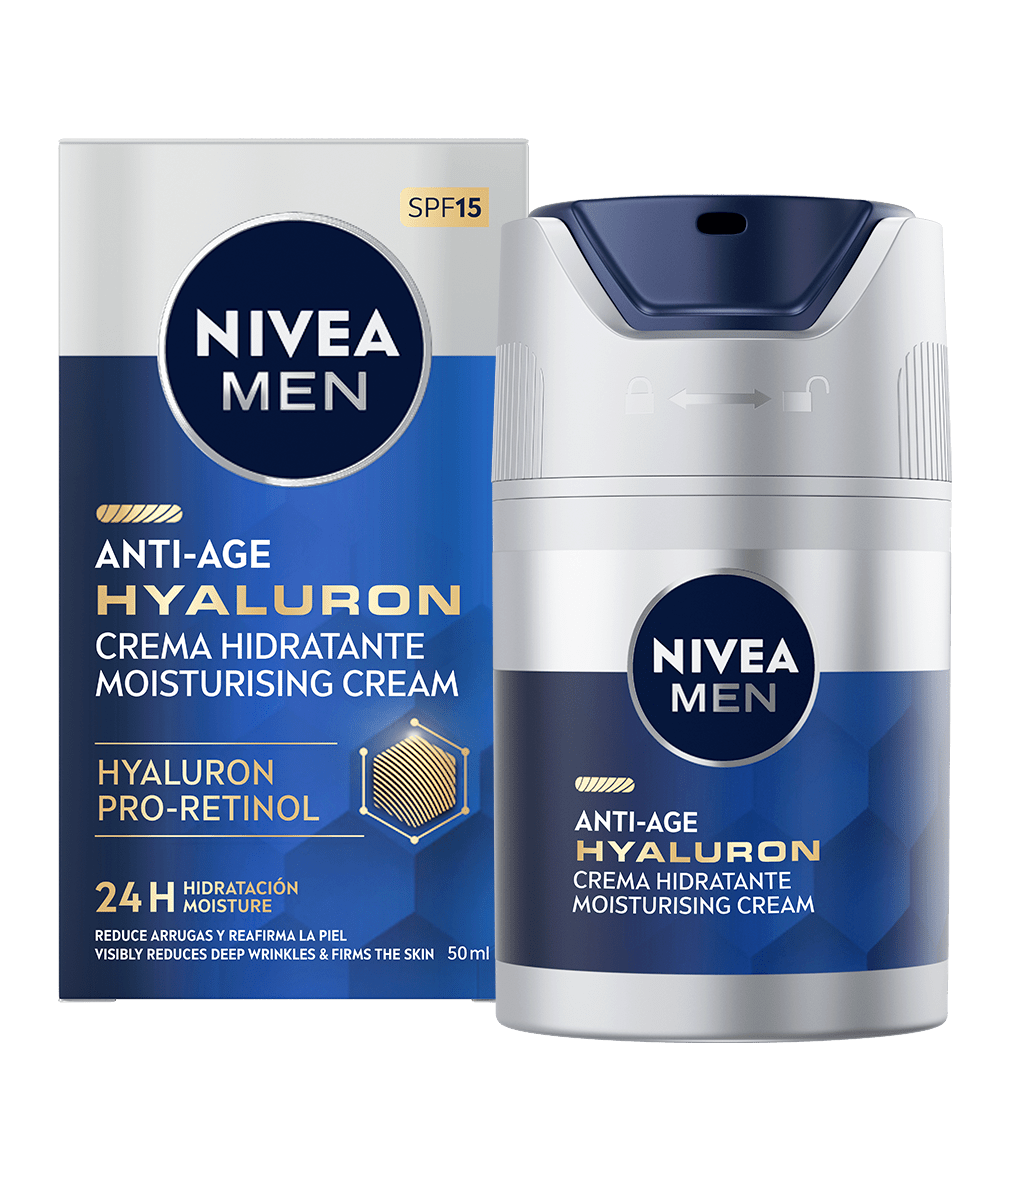 NIVEA MEN Hyaluron Anti-age Crema Hidratante